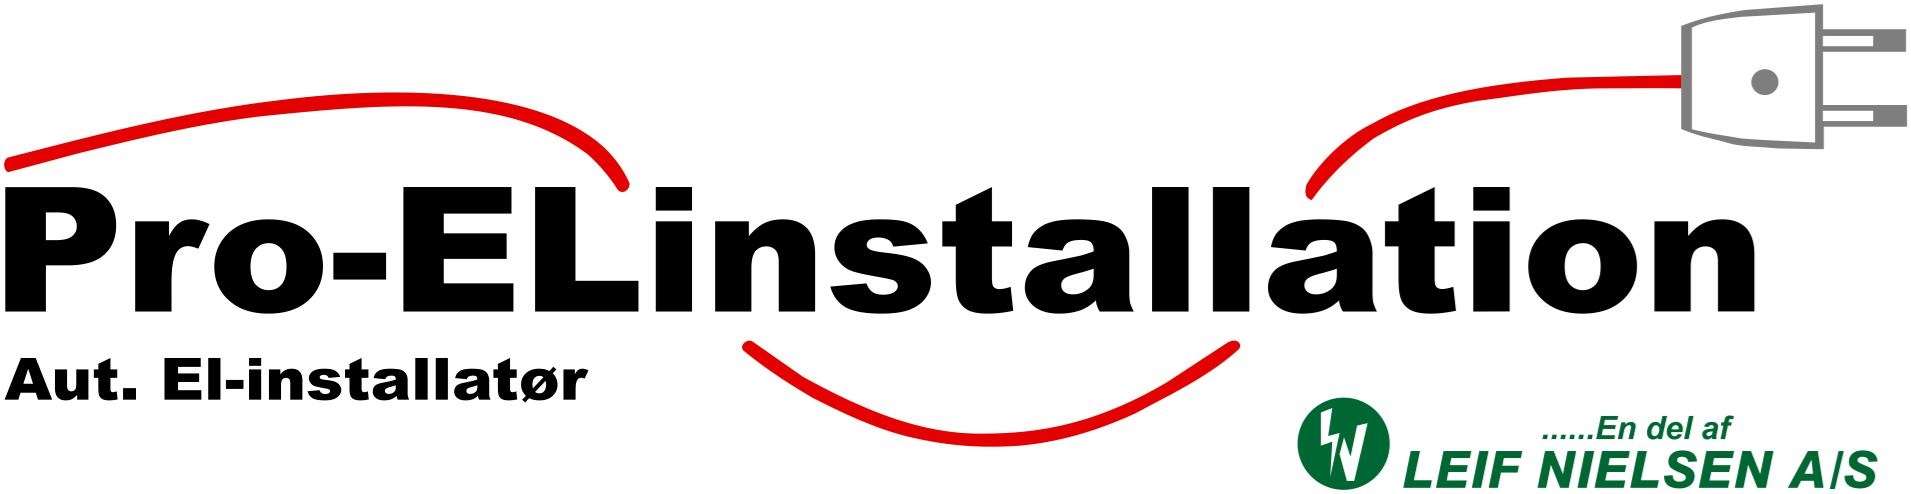 pro- el install logo med leif nielsen logo vector (1)